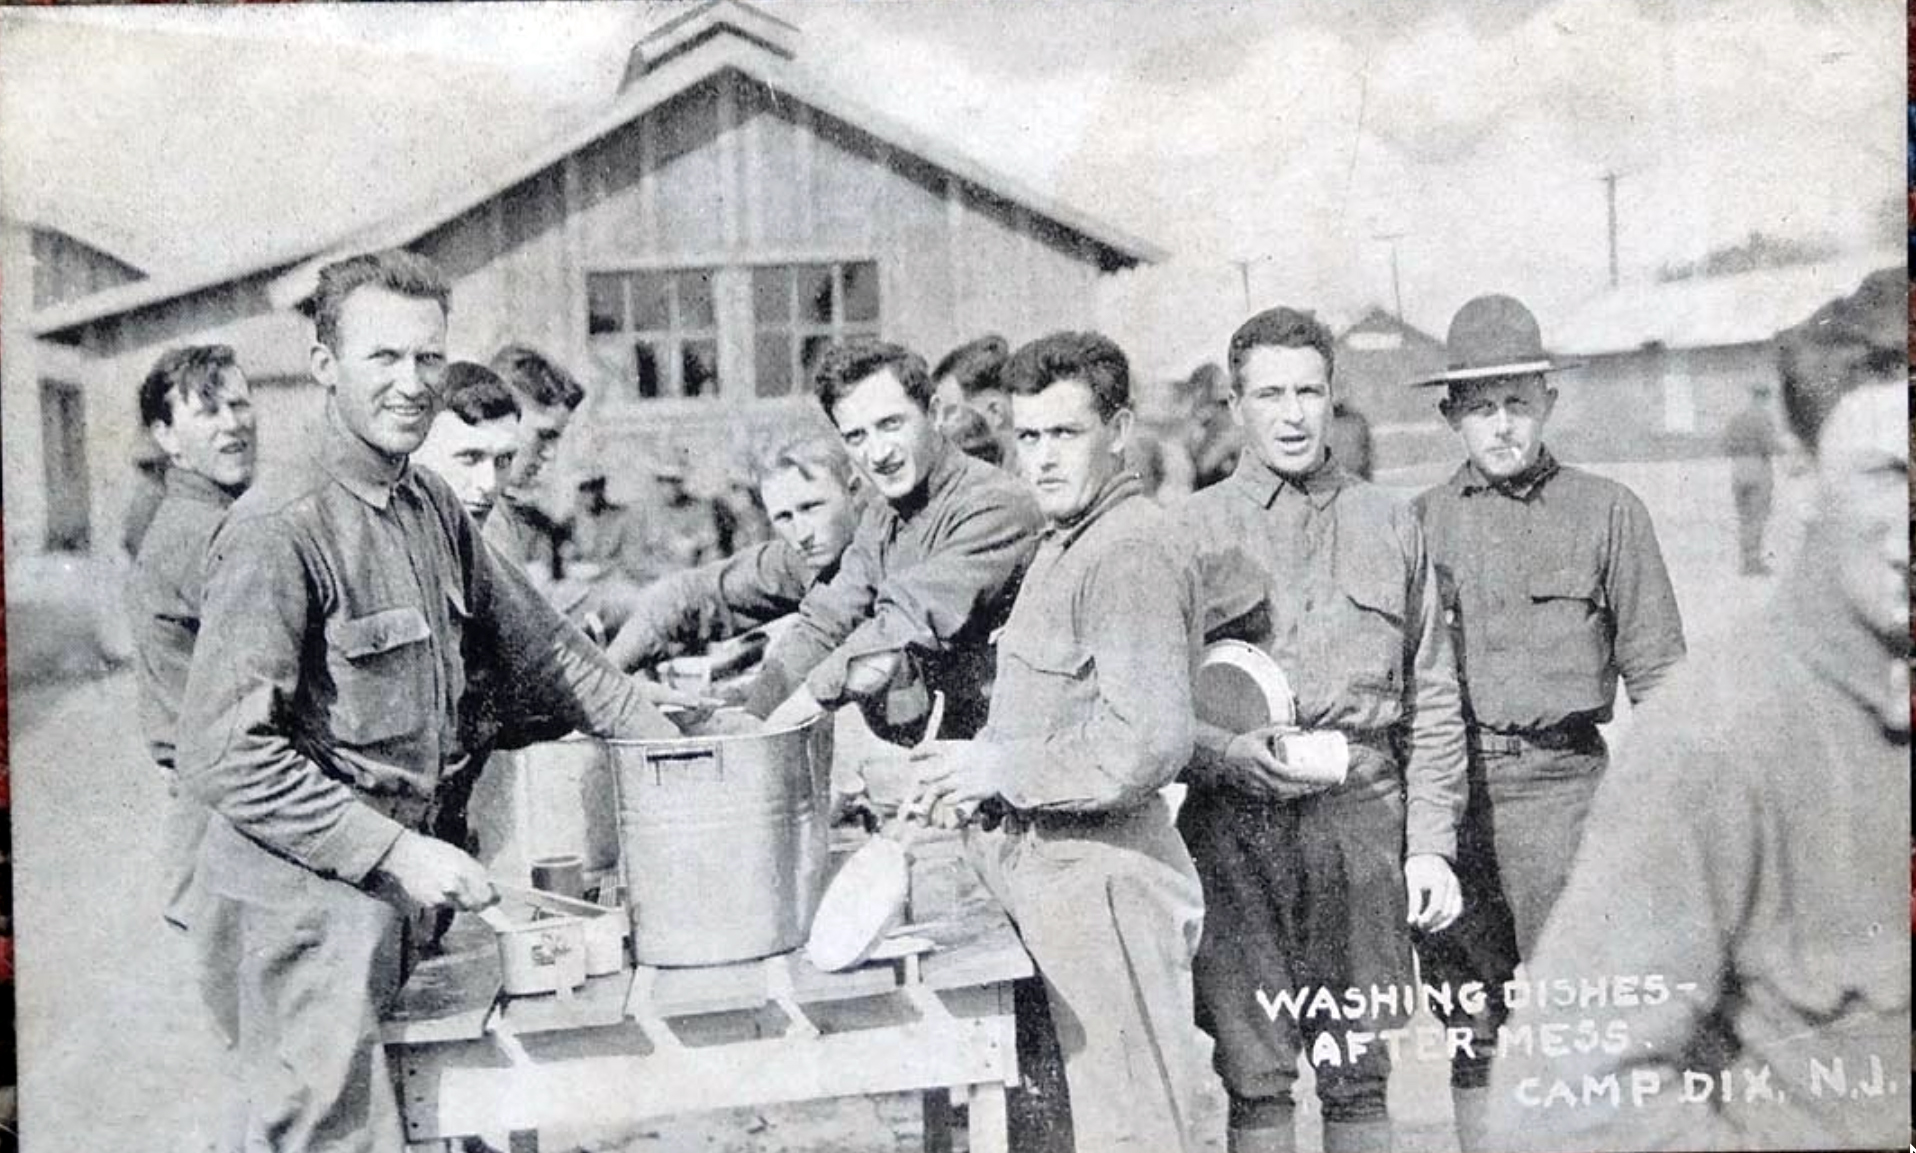 Camp Dix - Washing Dishes - around 1917-18